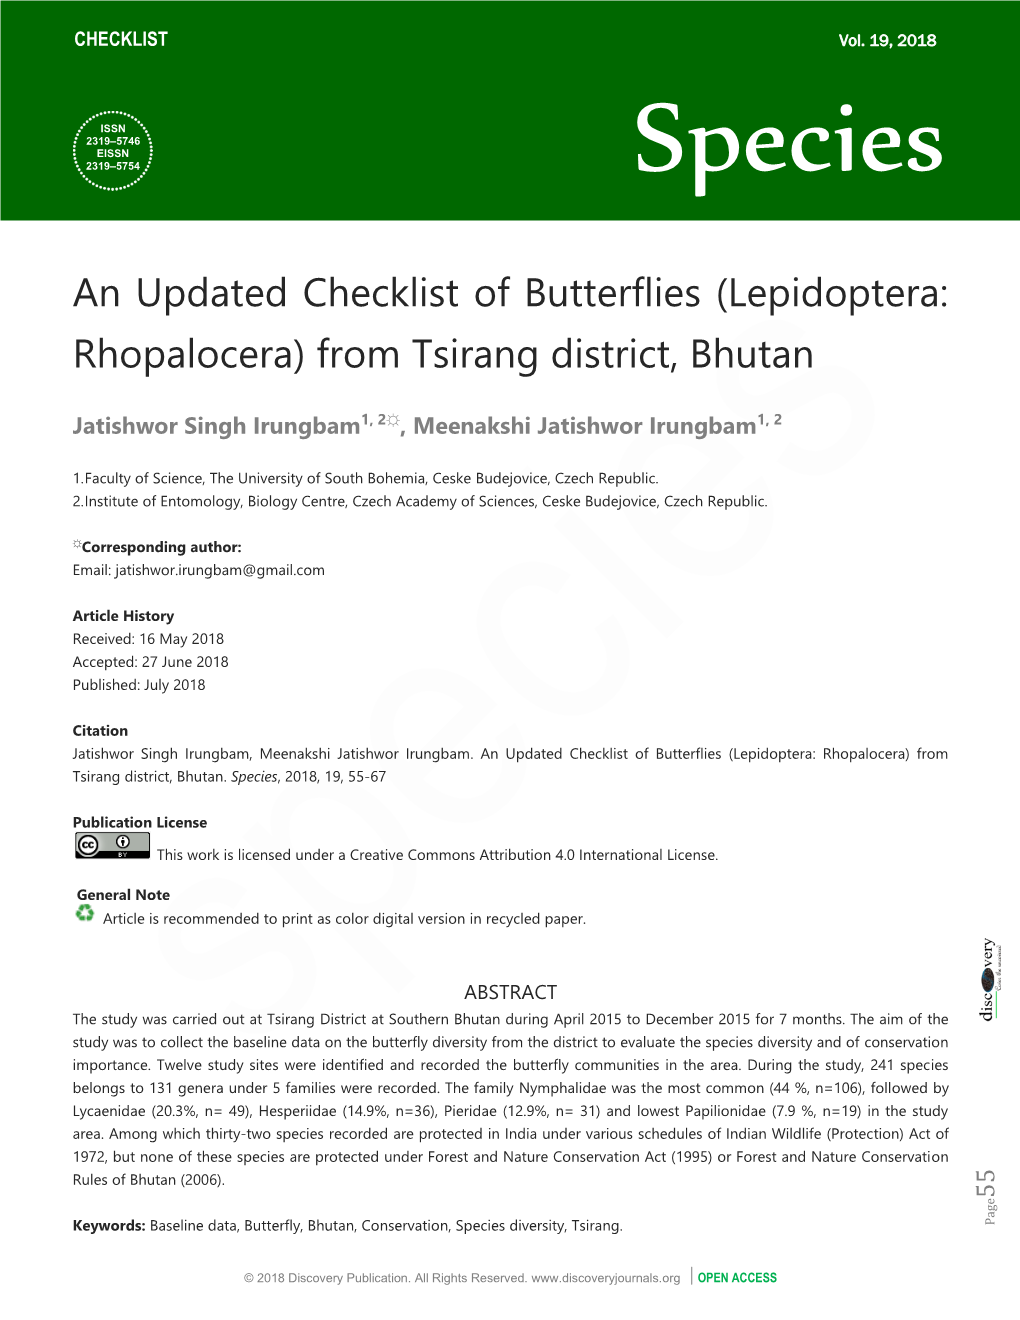 An Updated Checklist of Butterflies (Lepidoptera: Rhopalocera) from Tsirang District, Bhutan